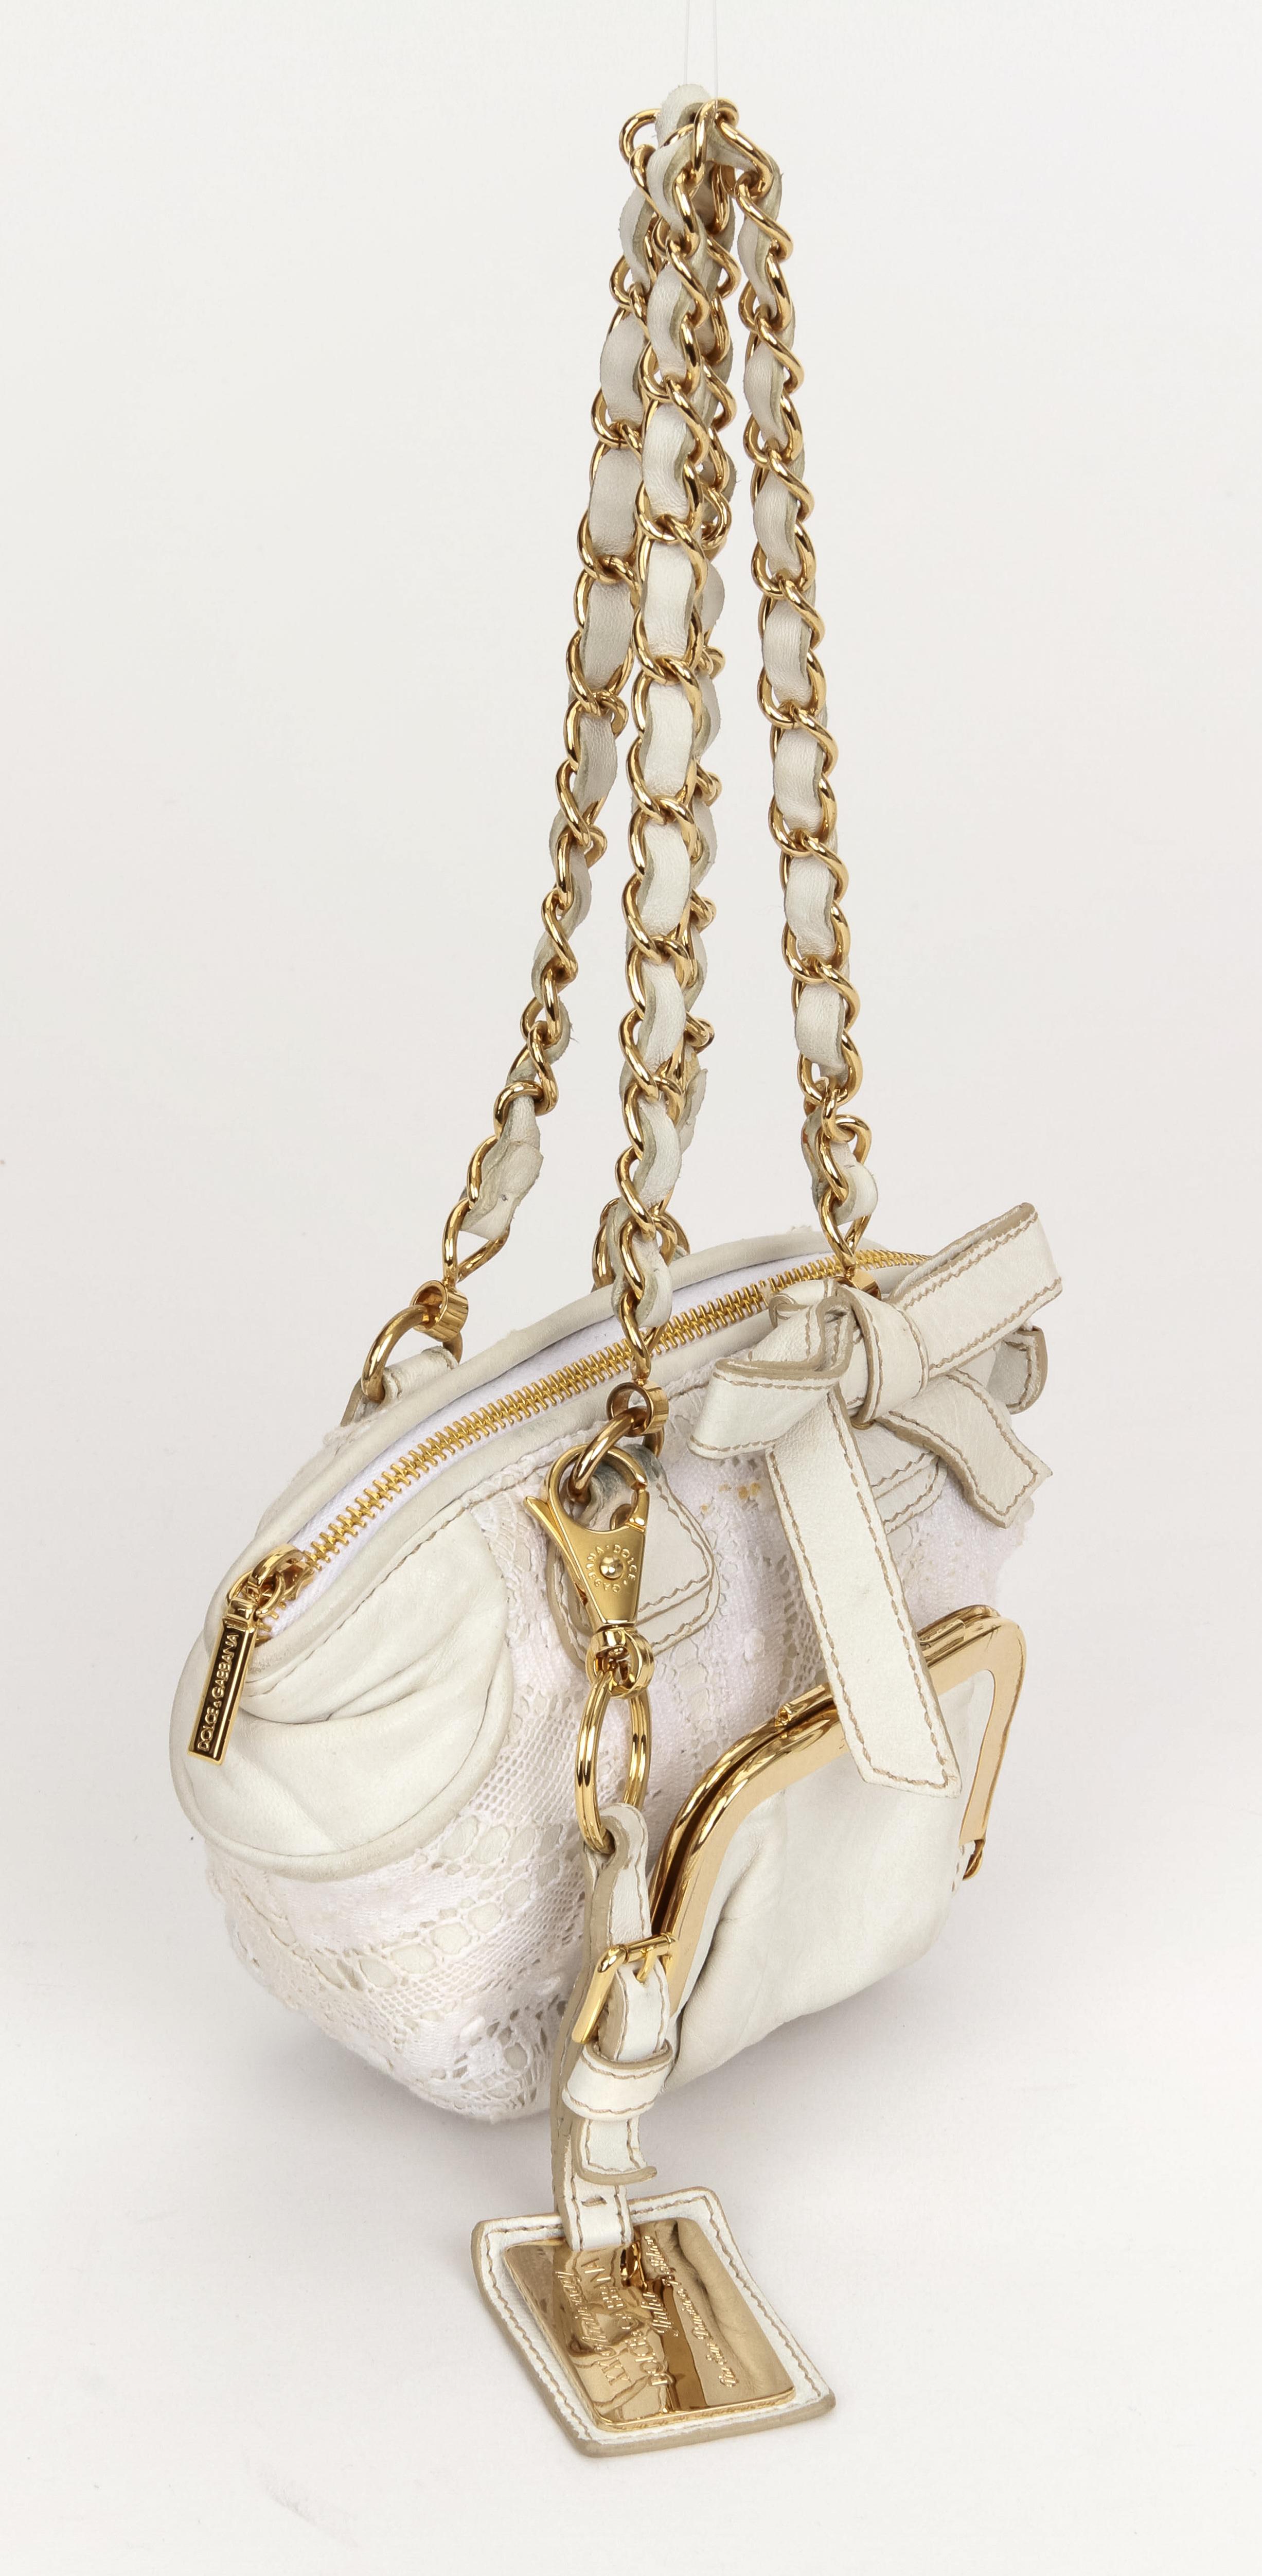 Dolce & Gabbana weiße Mini-Tasche mit goldener Hardware. Limitierte Auflage zum 20-jährigen Jubiläum. Kommt mit originalem Schutzumschlag. Fallhöhe der Hand 6,5